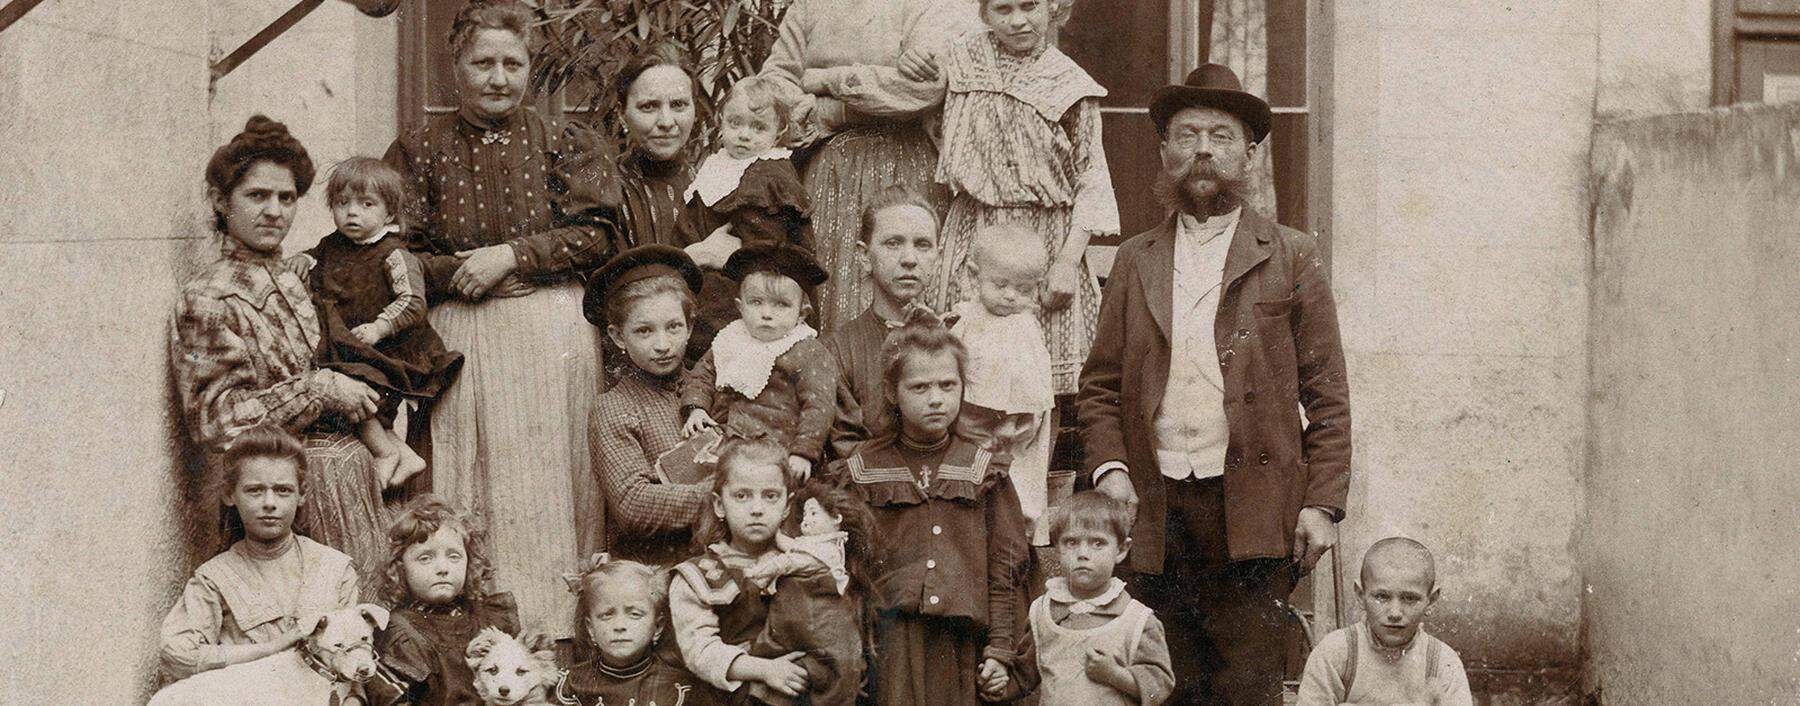 Woher komme ich? Diese Frage wollen Anbieter von DNA-Analysen zur Ahnenforschung lösen. Im Bild: Eine kinderreiche Familie im Hinterhof eines Wiener Vorstadthauses um 1910.